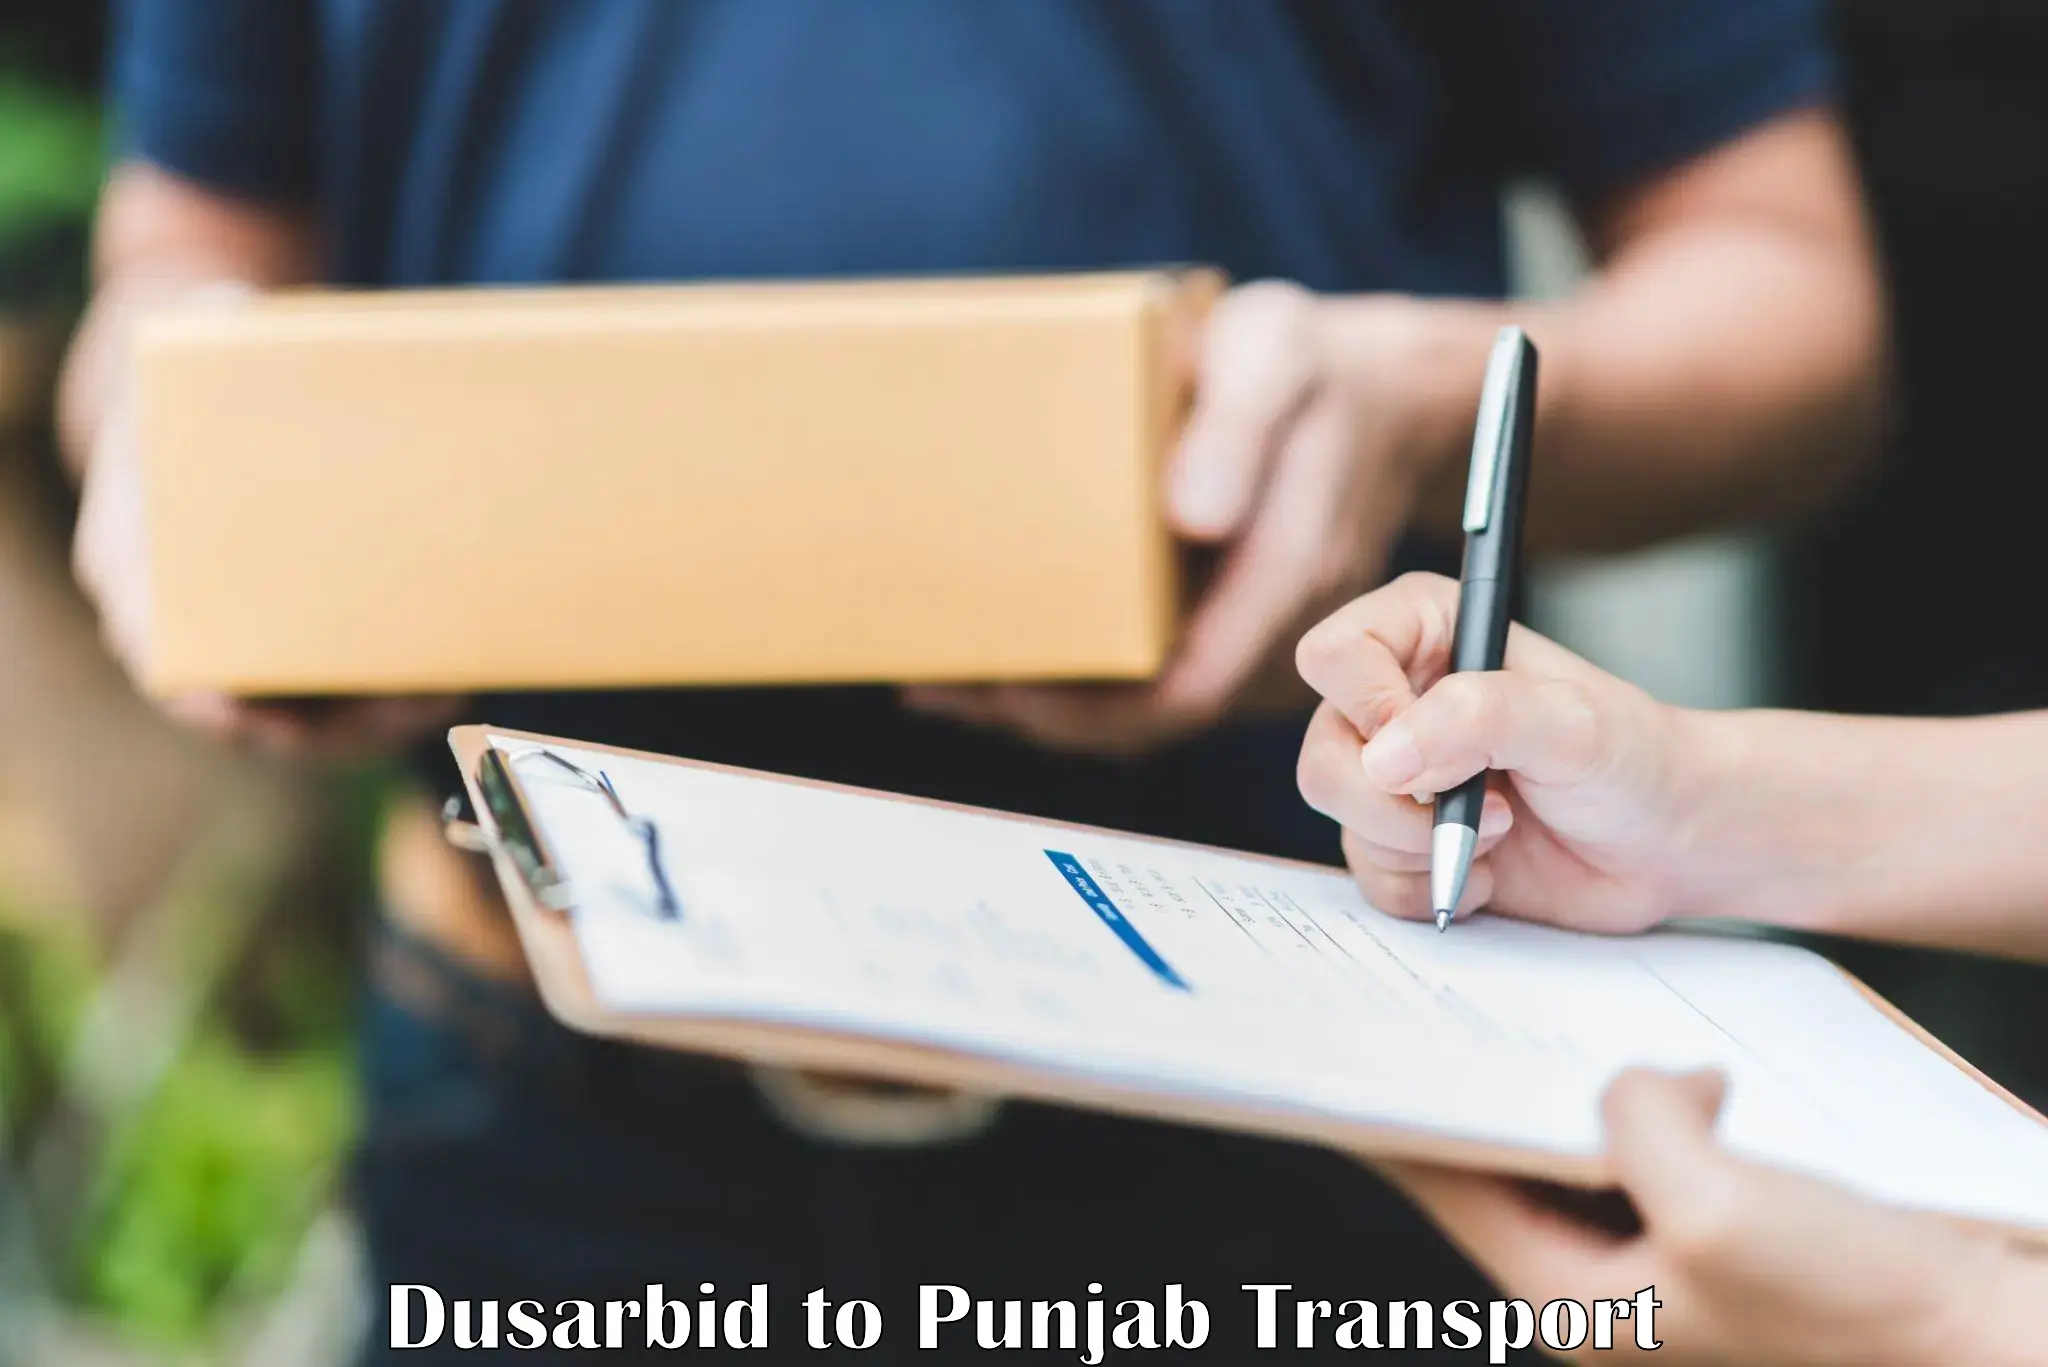 Parcel transport services Dusarbid to Kotkapura